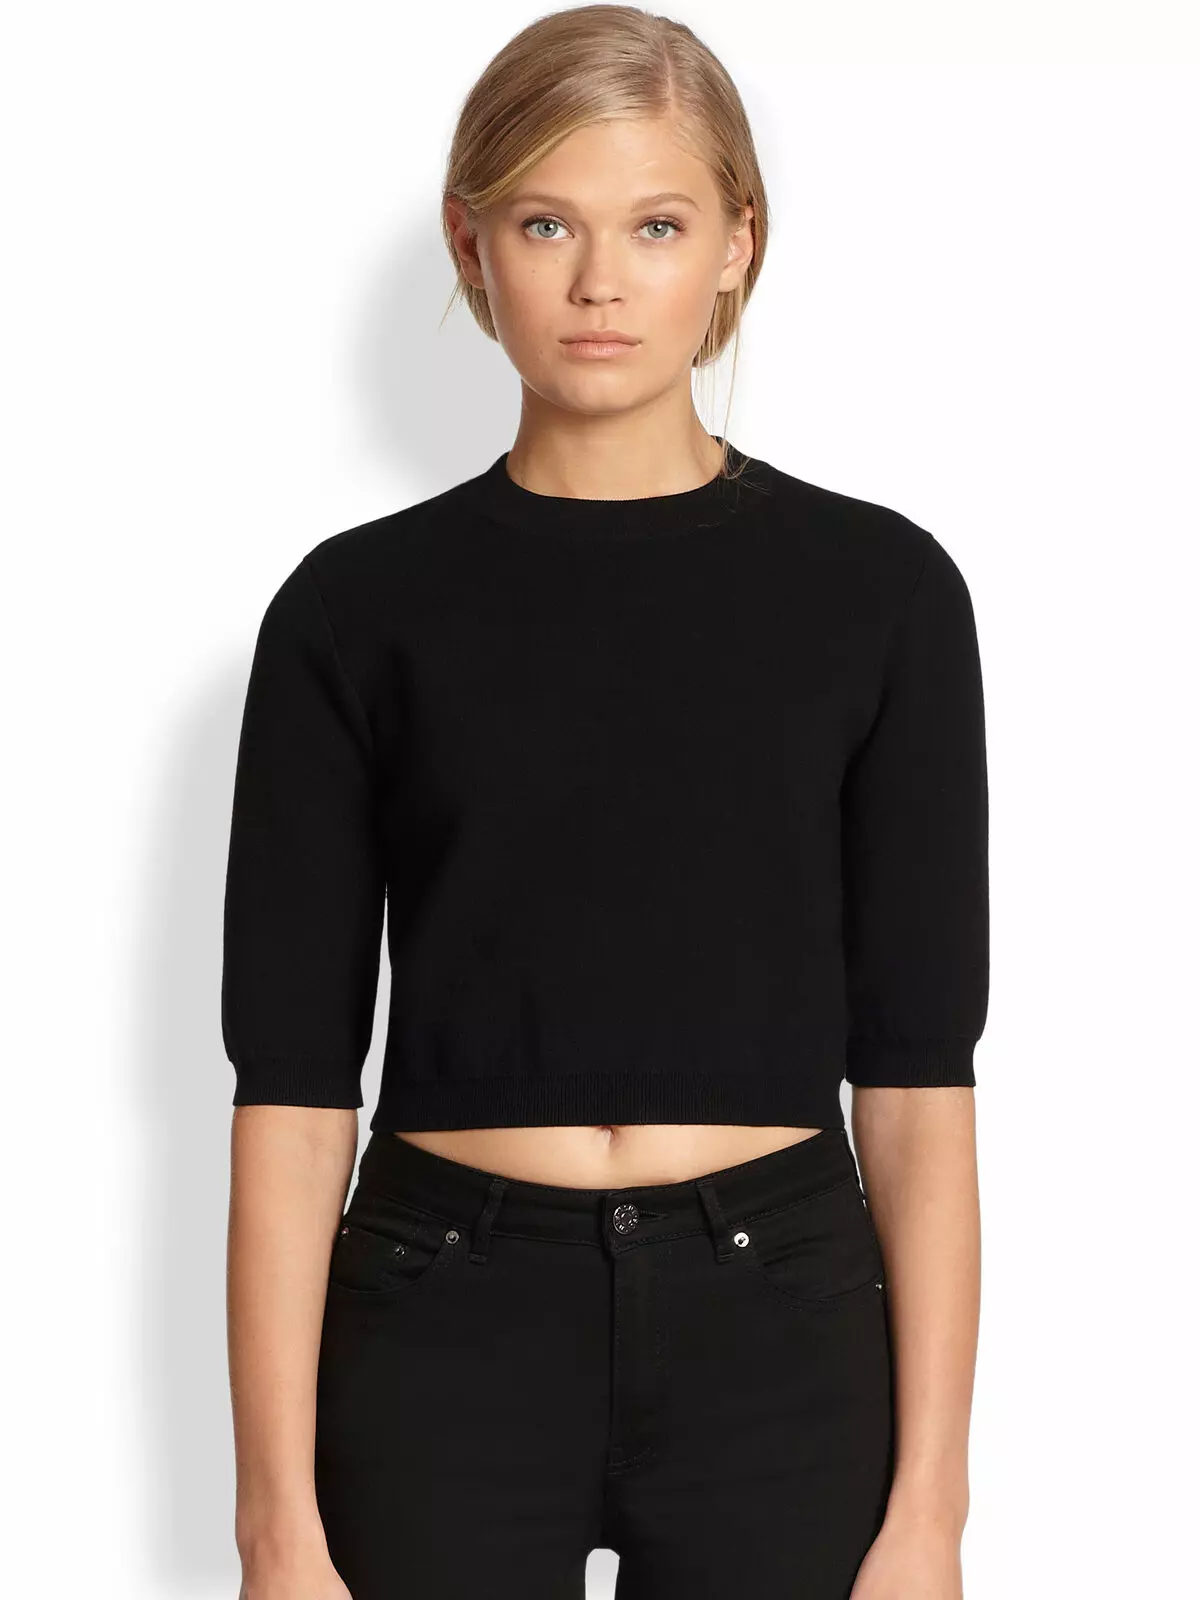 Cropped Sweater (129 foto): Apa yang harus dipakai dengan lengan panjang, hitam, model 2021 1026_36